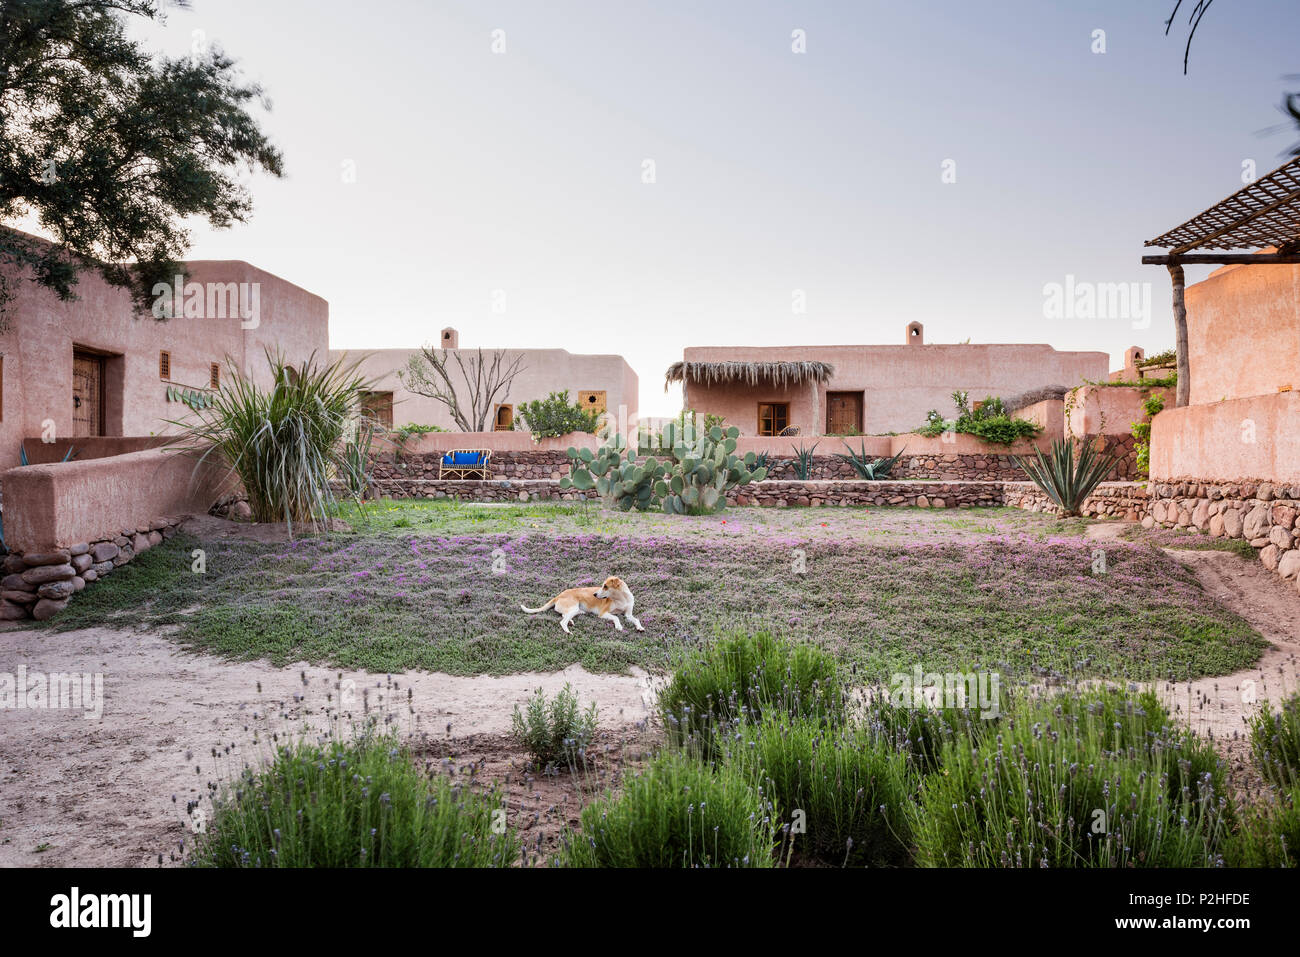 La facciata esterna di adobe in stile berbero casette con giardino di lavanda, erbe e marocchine piante selvatiche. Garden design di Arnaud Casaus Foto Stock